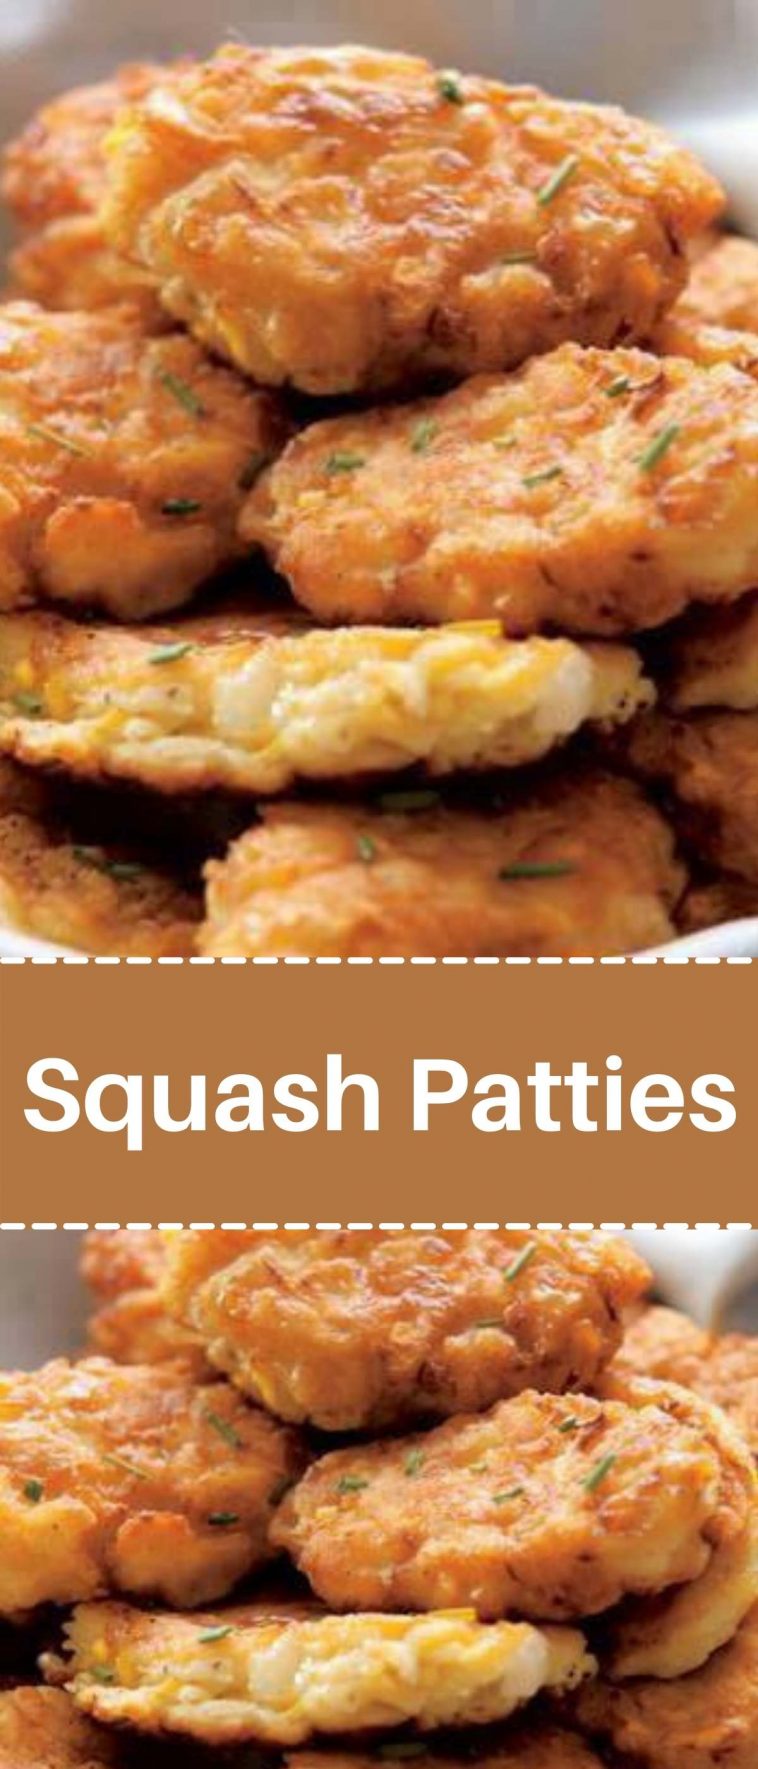 Squash Patties